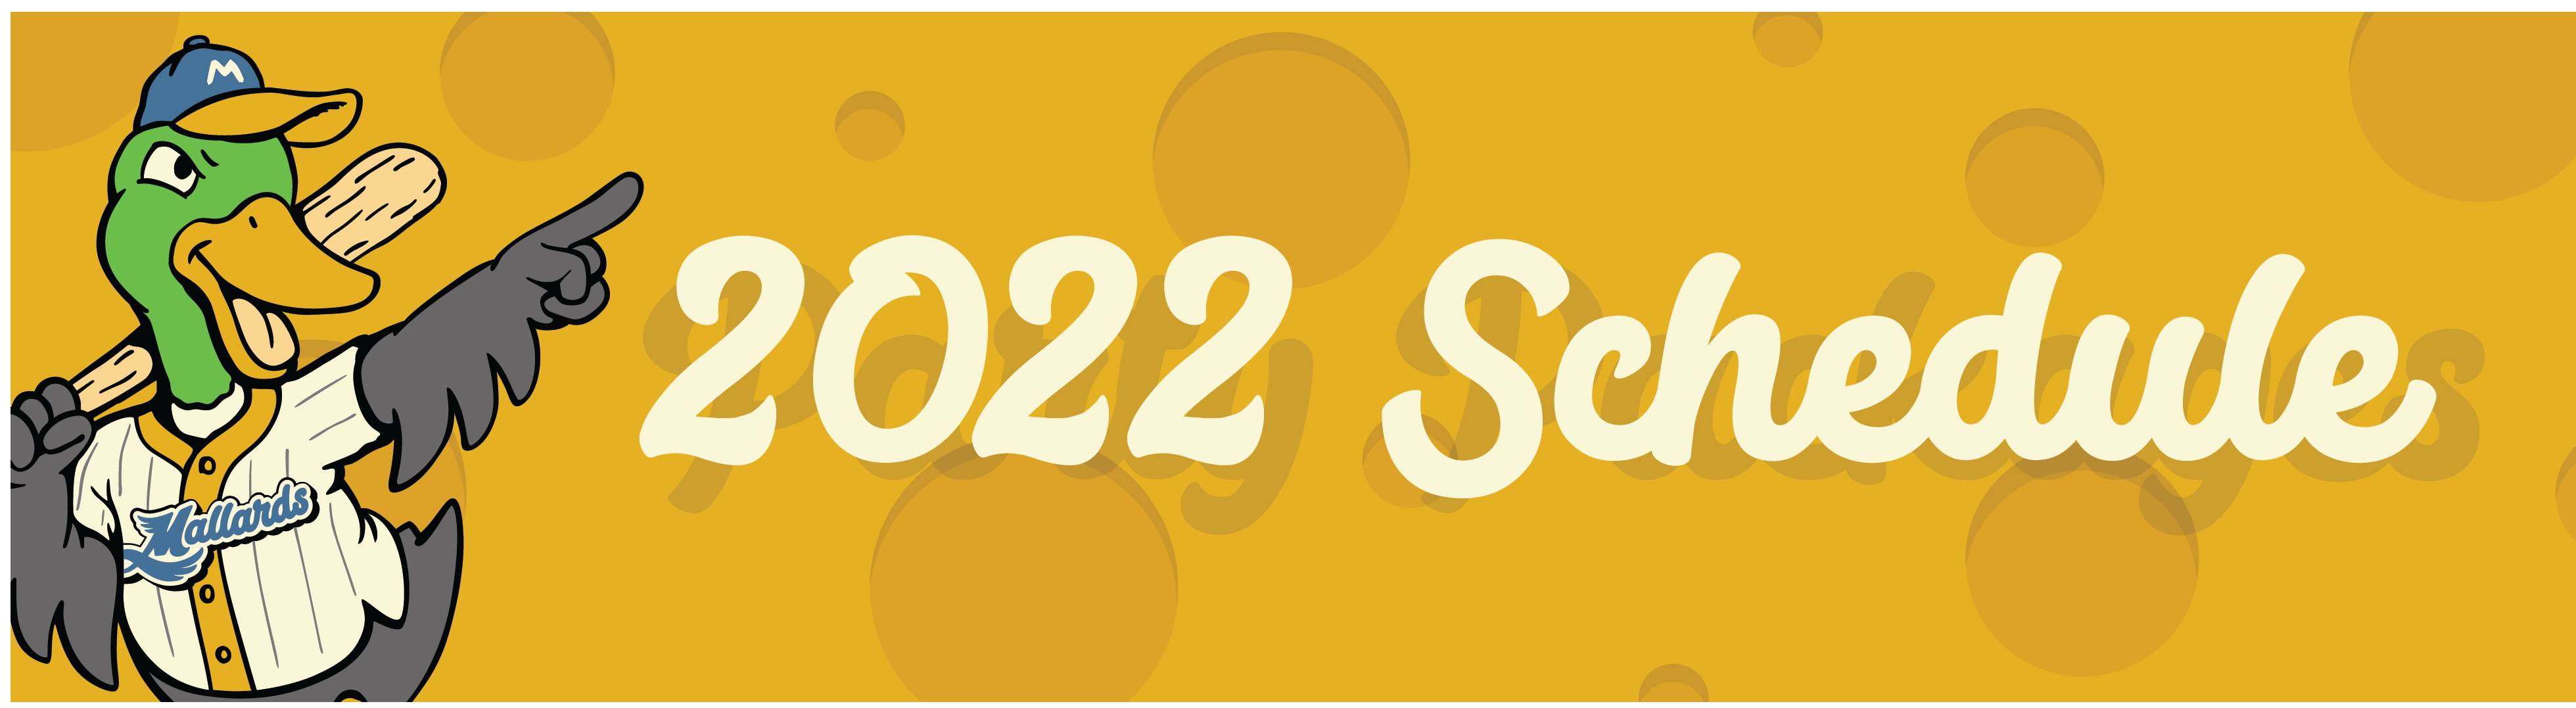 Mallards Schedule 2022 2022 Schedule - Madison Mallards : Madison Mallards